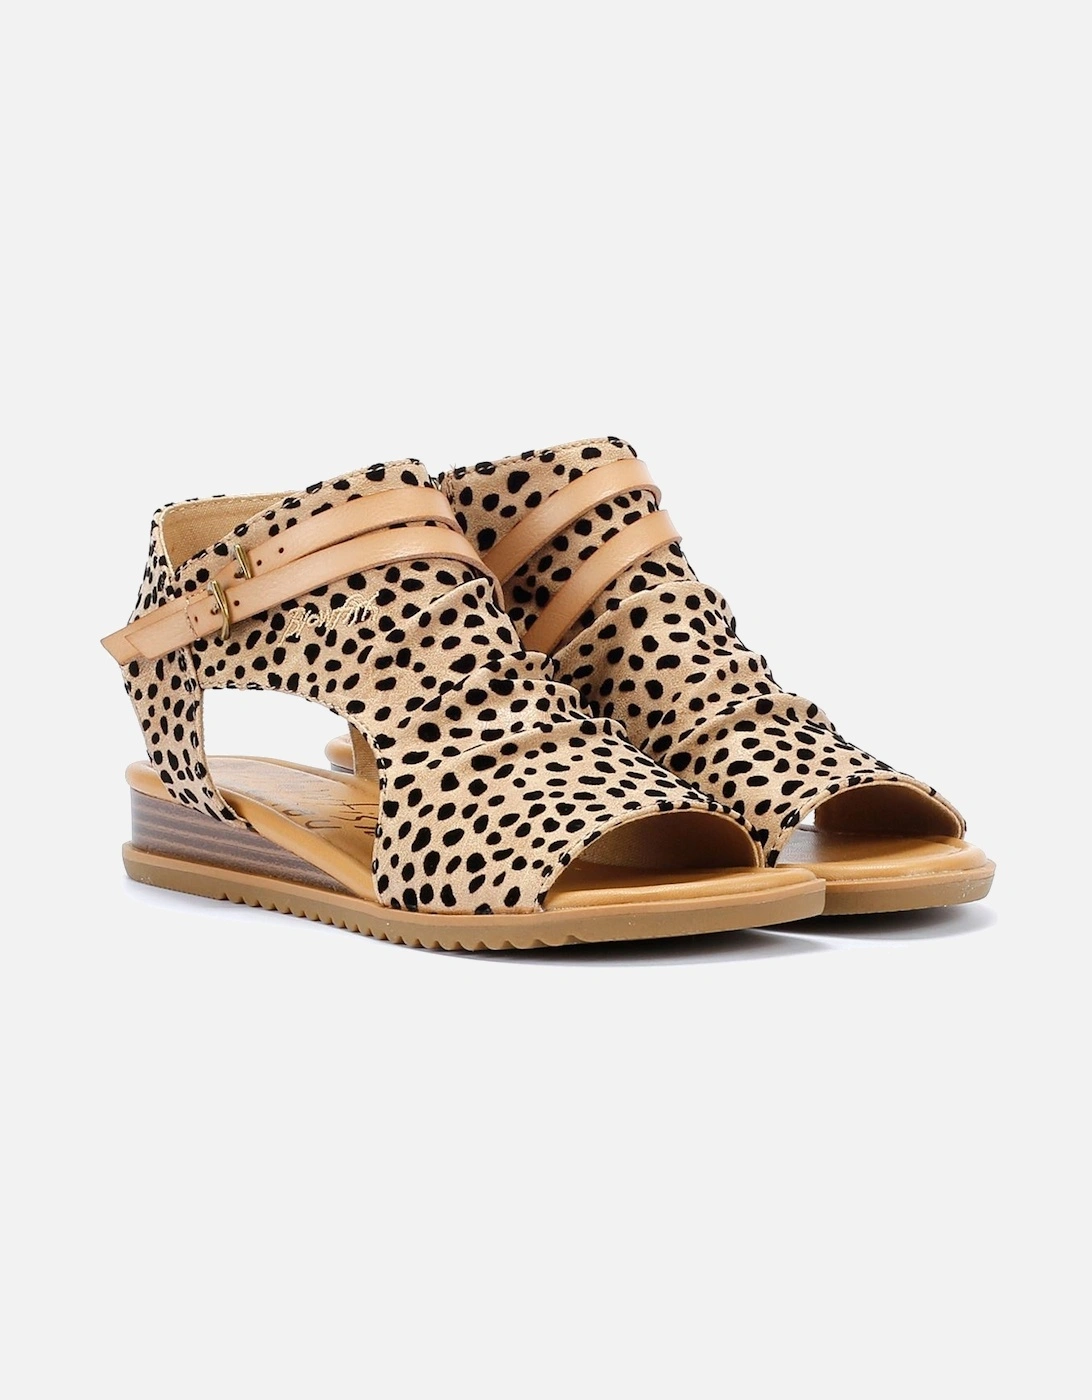 Butterfly Women's Leopard Sandals, 9 of 8